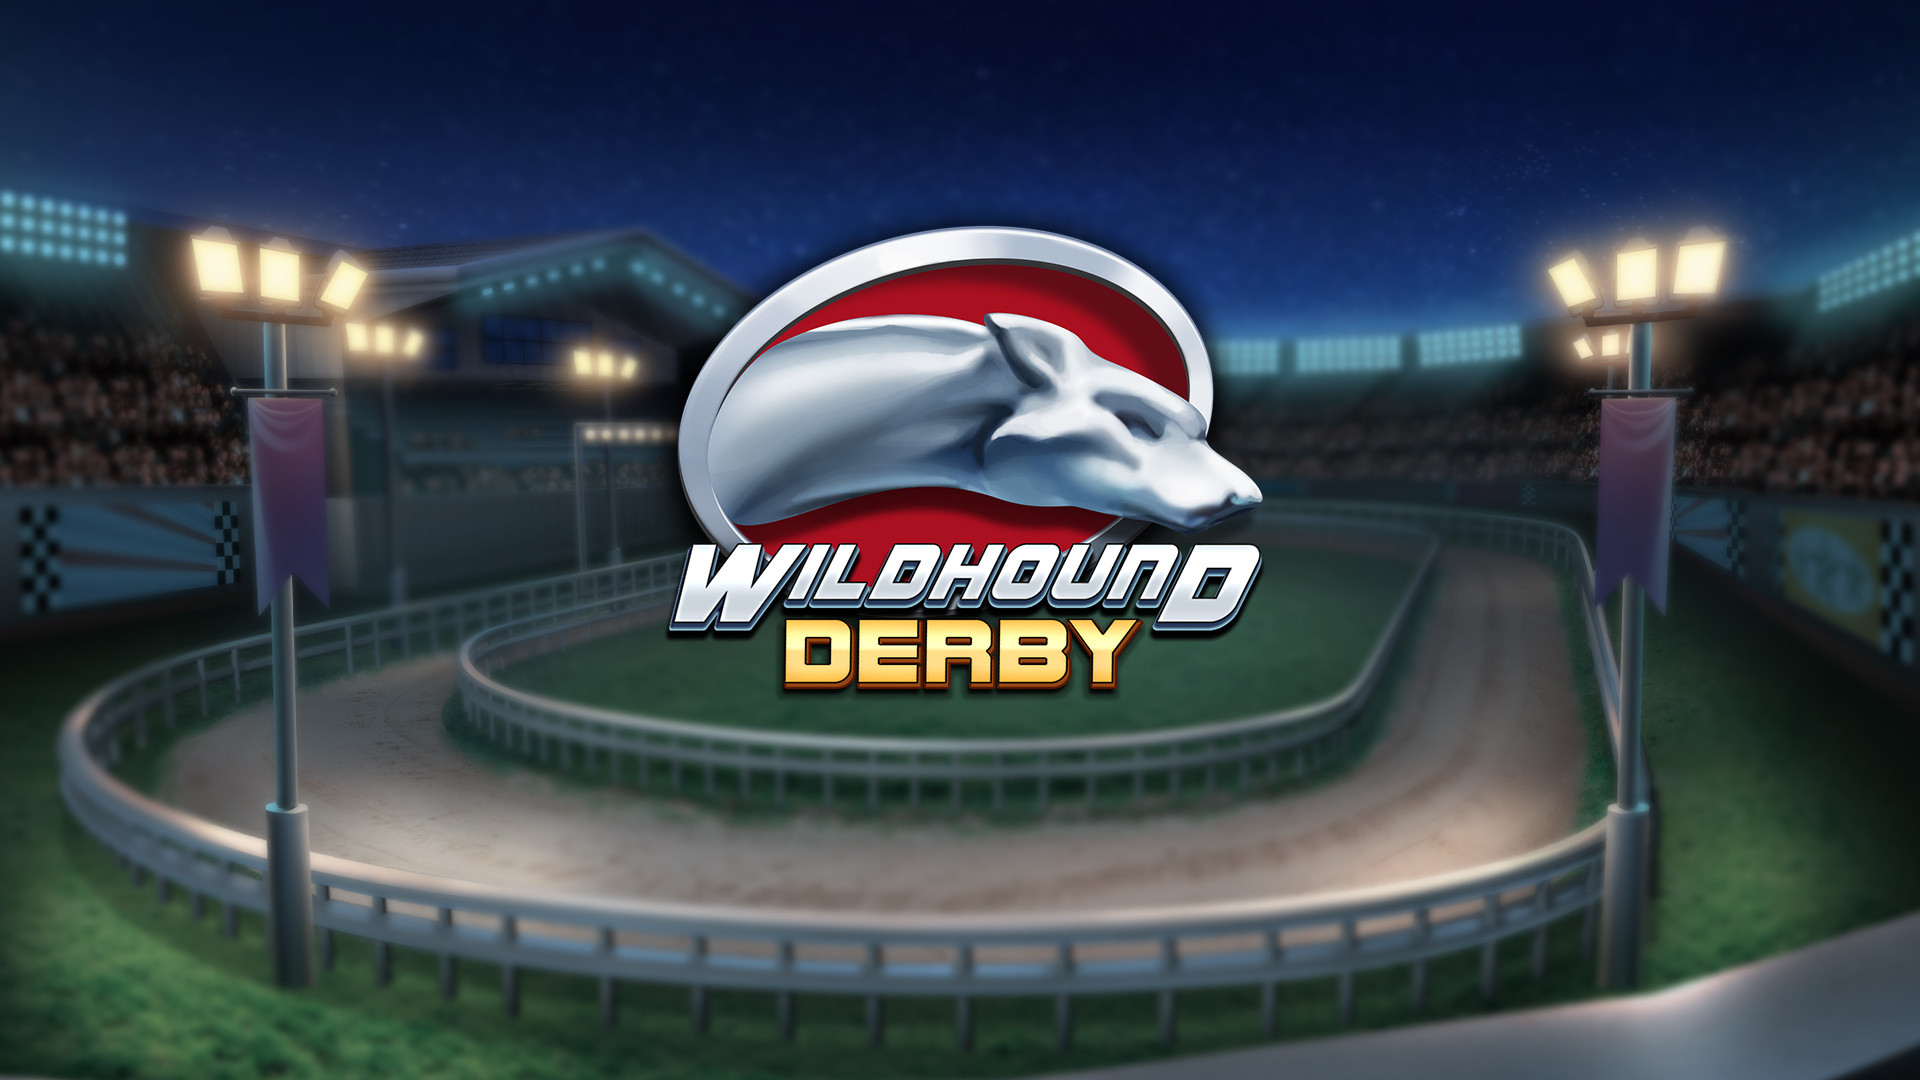 Wildhound Derby